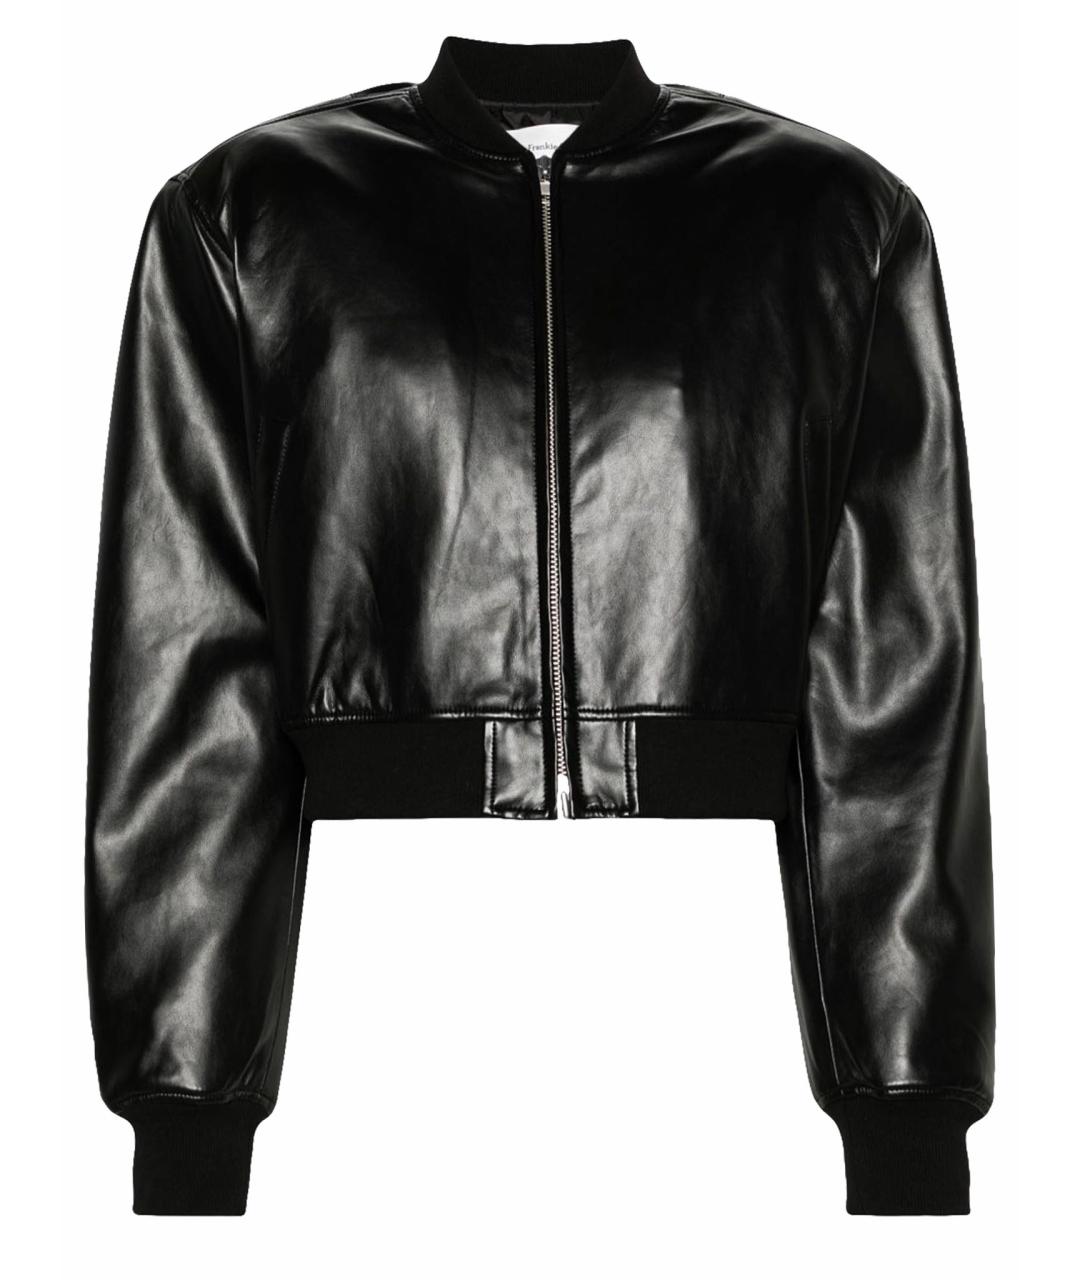 THE FRANKIE SHOP Черная полиуретановая куртка, фото 1